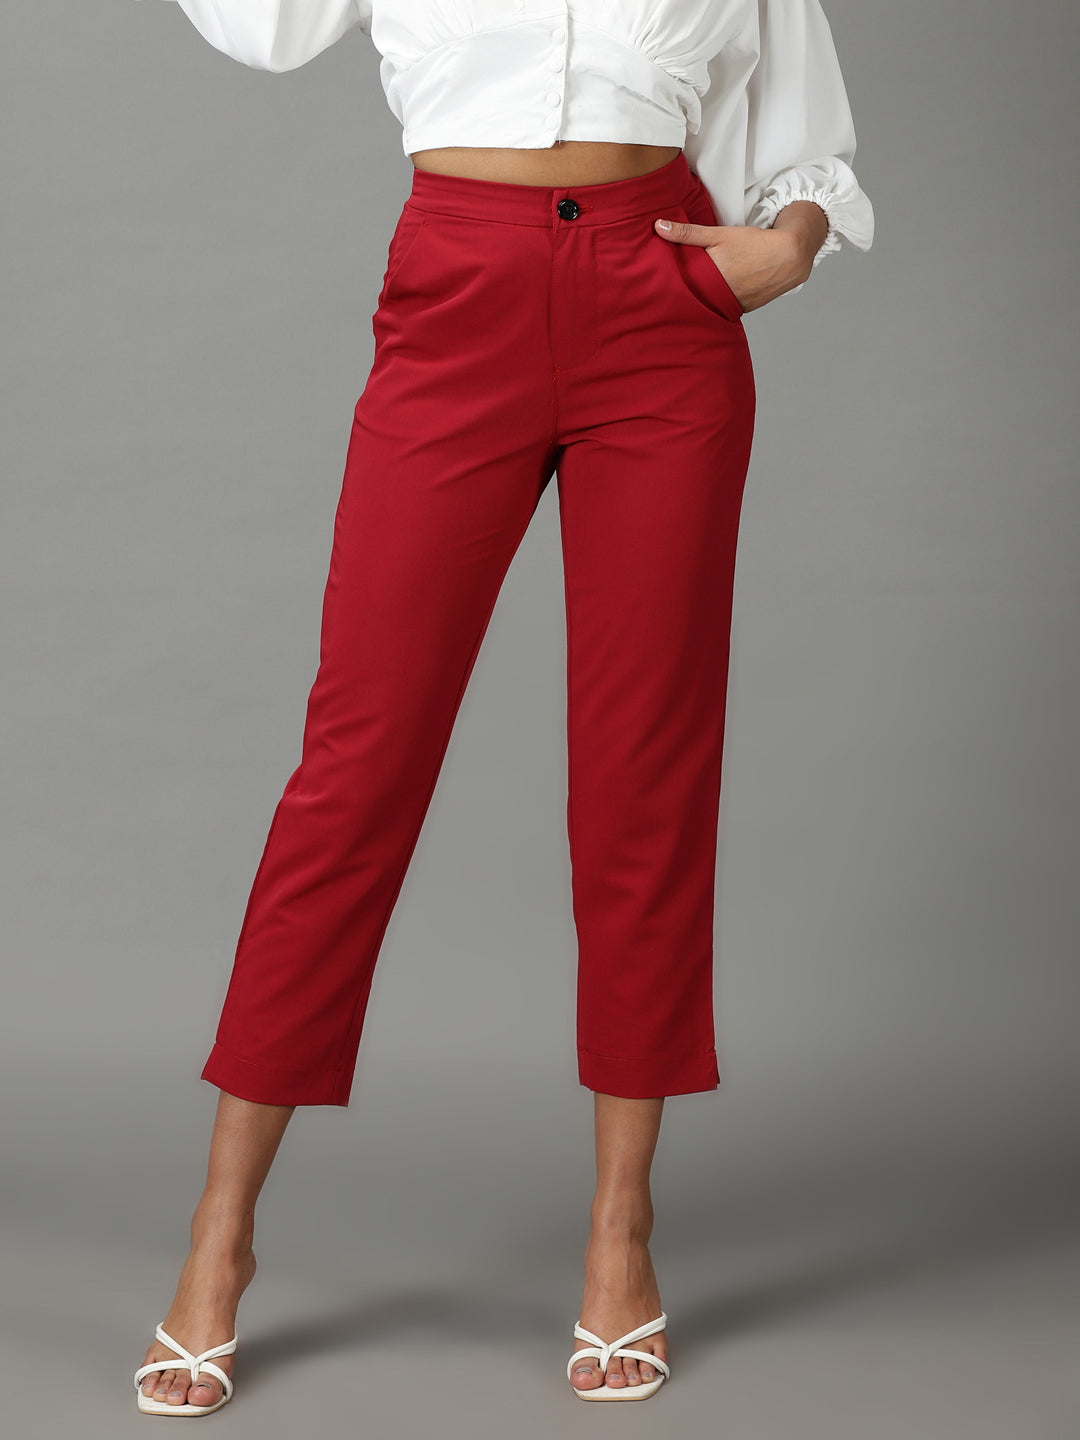 Women's Maroon Solid Formal Trouser